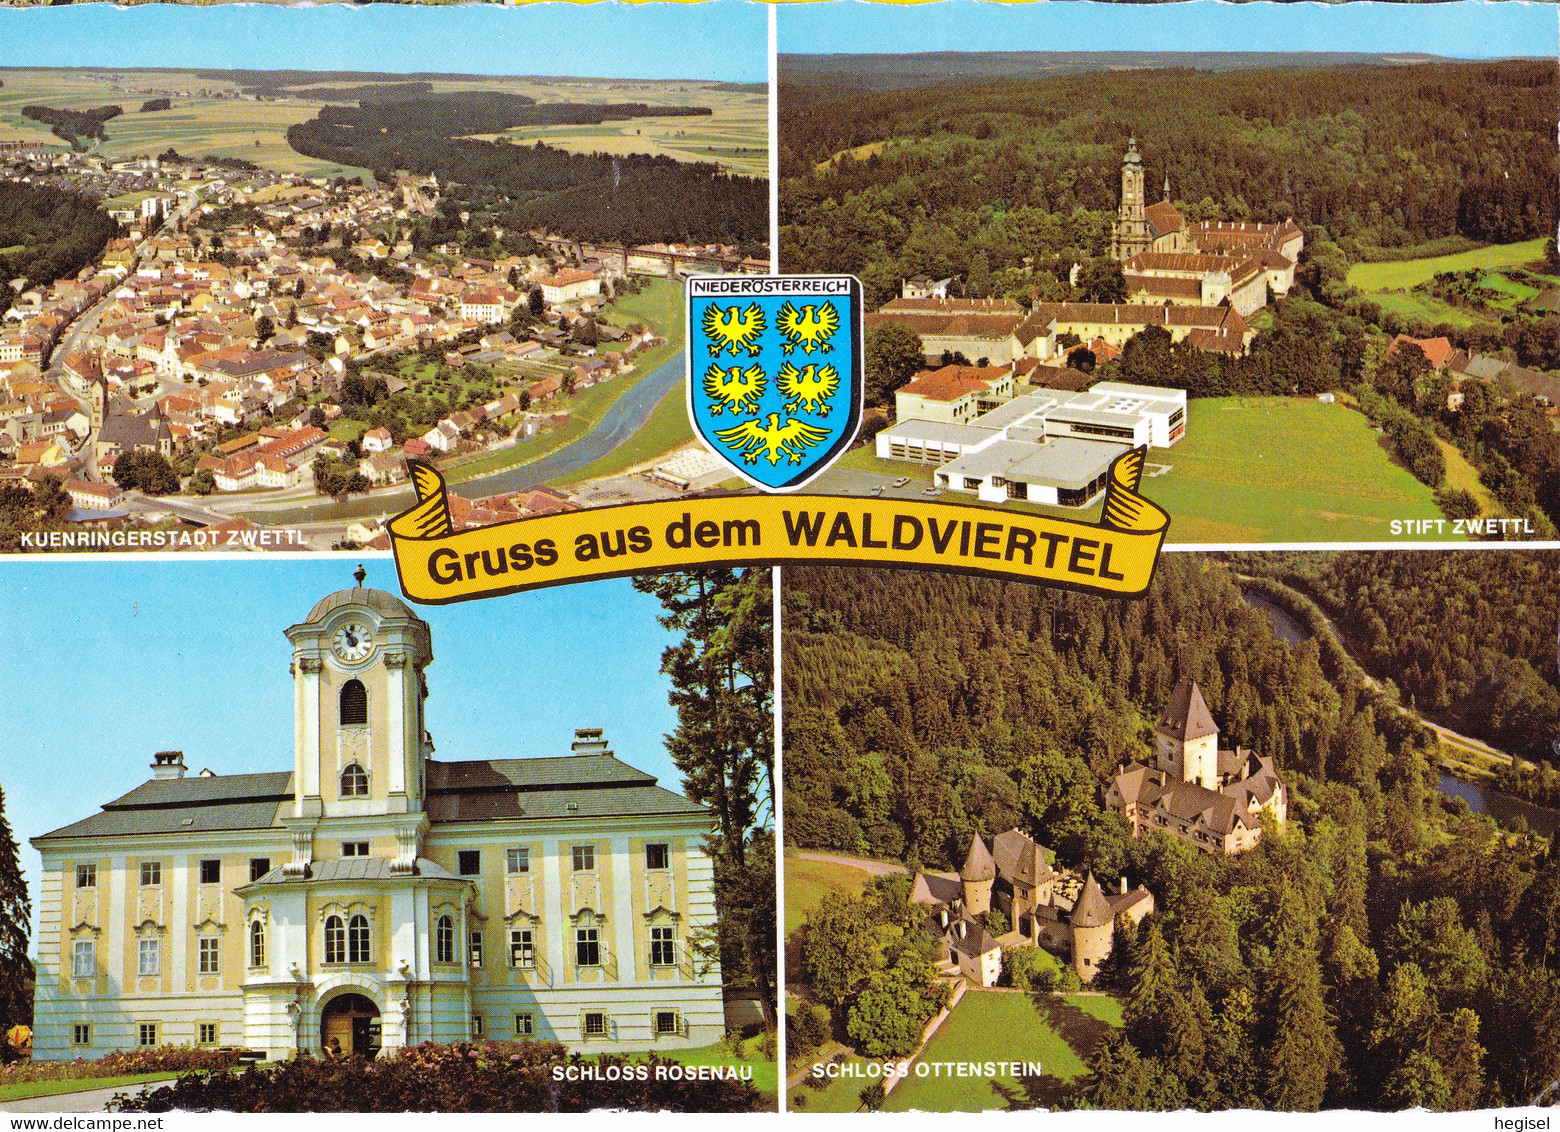 1981, Österreich, Zwettl (Kuenringerstadt), Stift, Schloss Rosenau, Schloss Ottenstein, Niederösterreich - Zwettl